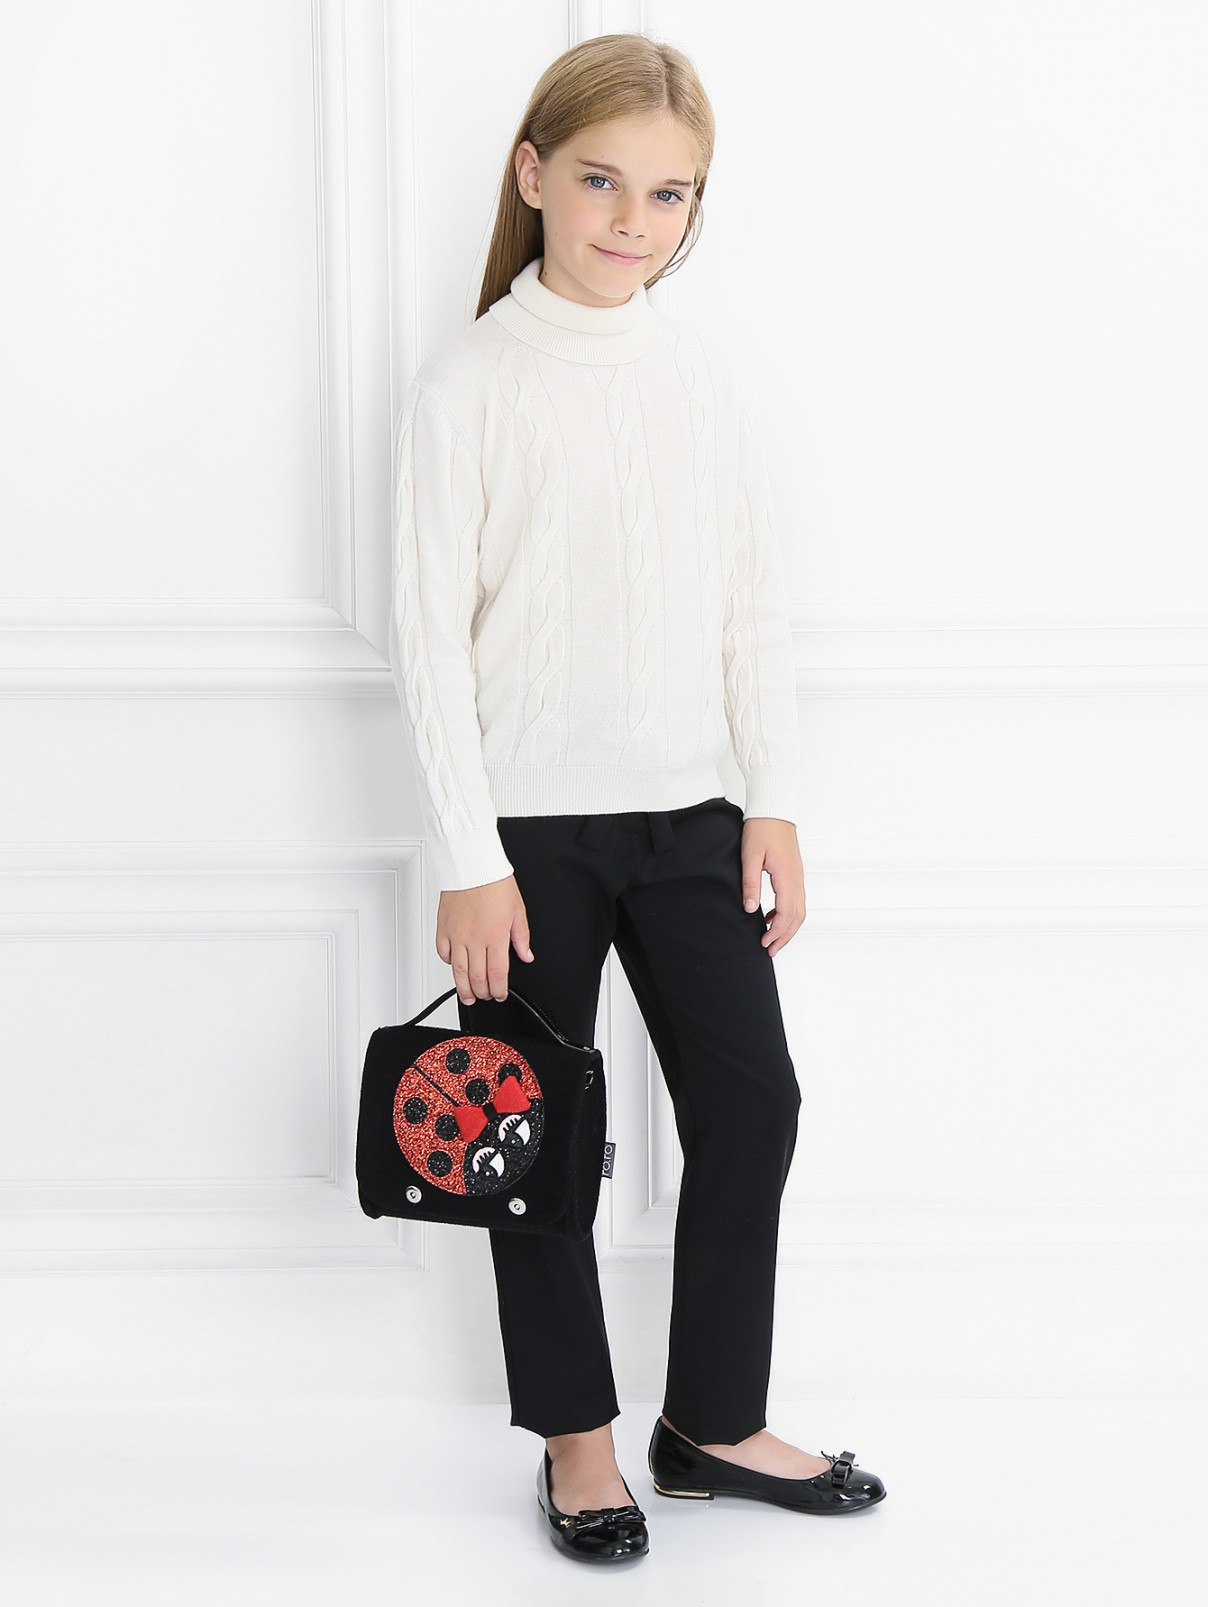 Брюки из тонкой шерсти с поясом Aletta Couture  –  Модель Общий вид  – Цвет:  Черный